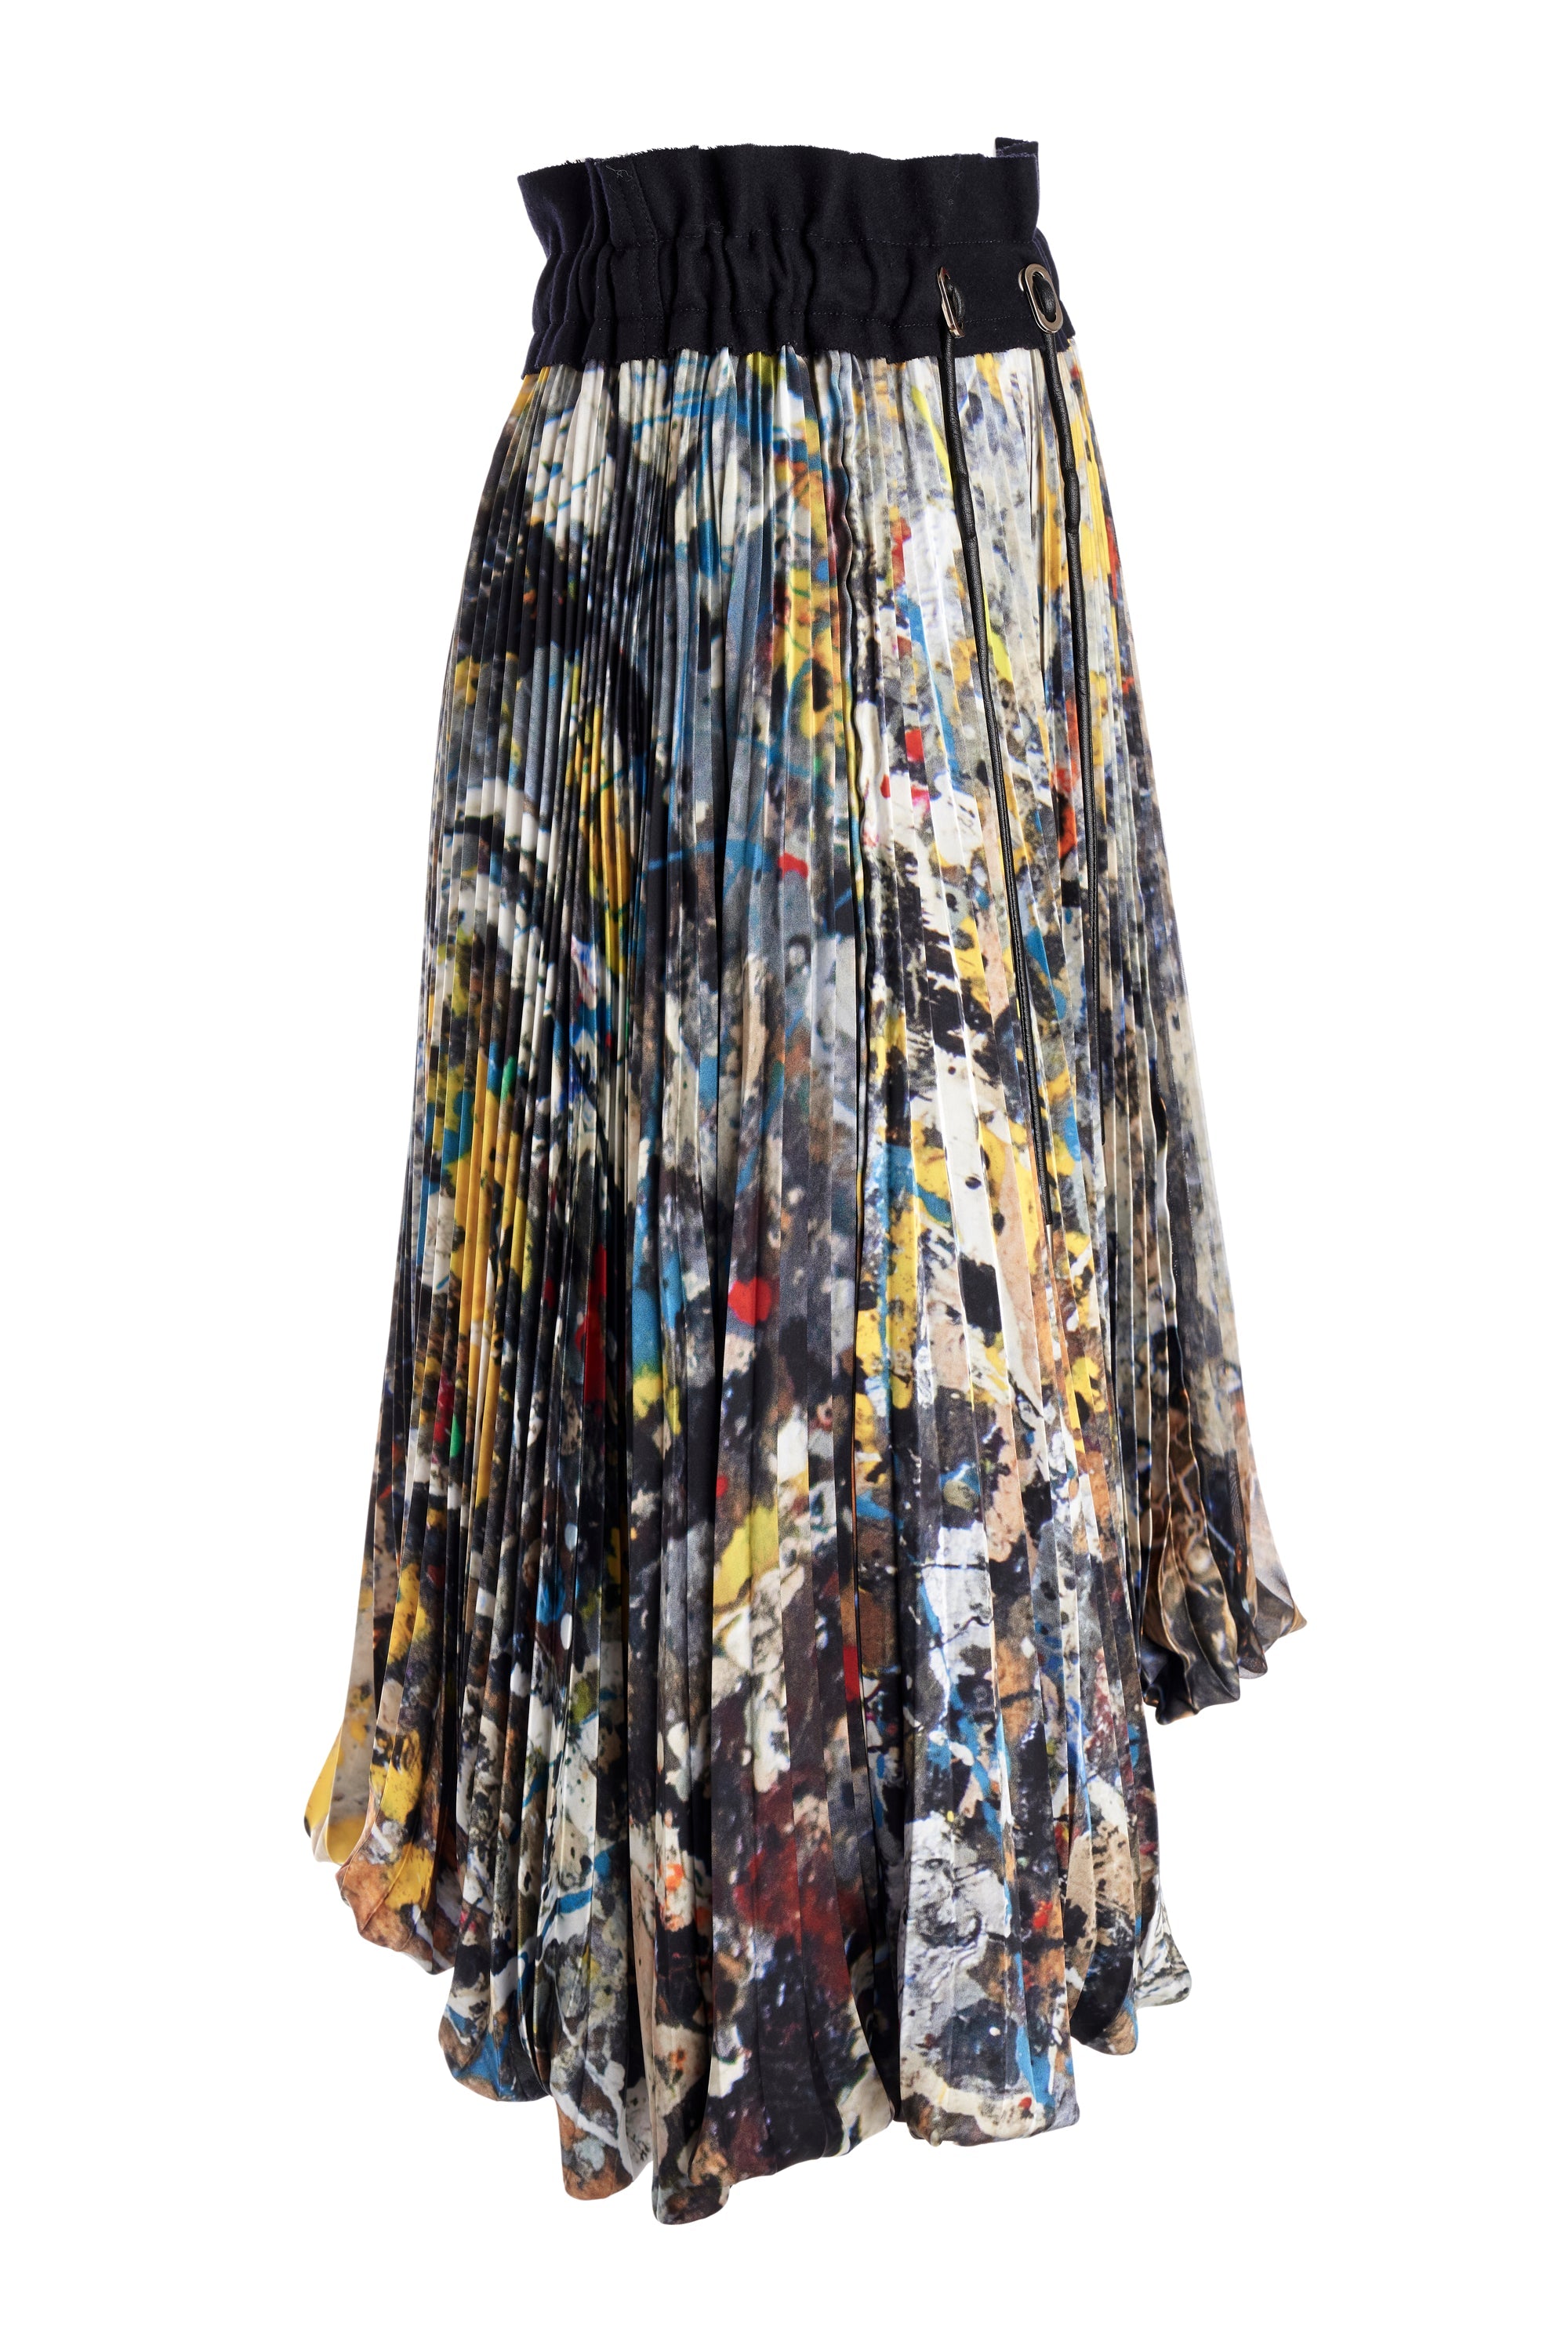 Sacai Pleated Jackson Pollock Skirt - Foxy Couture Carmel